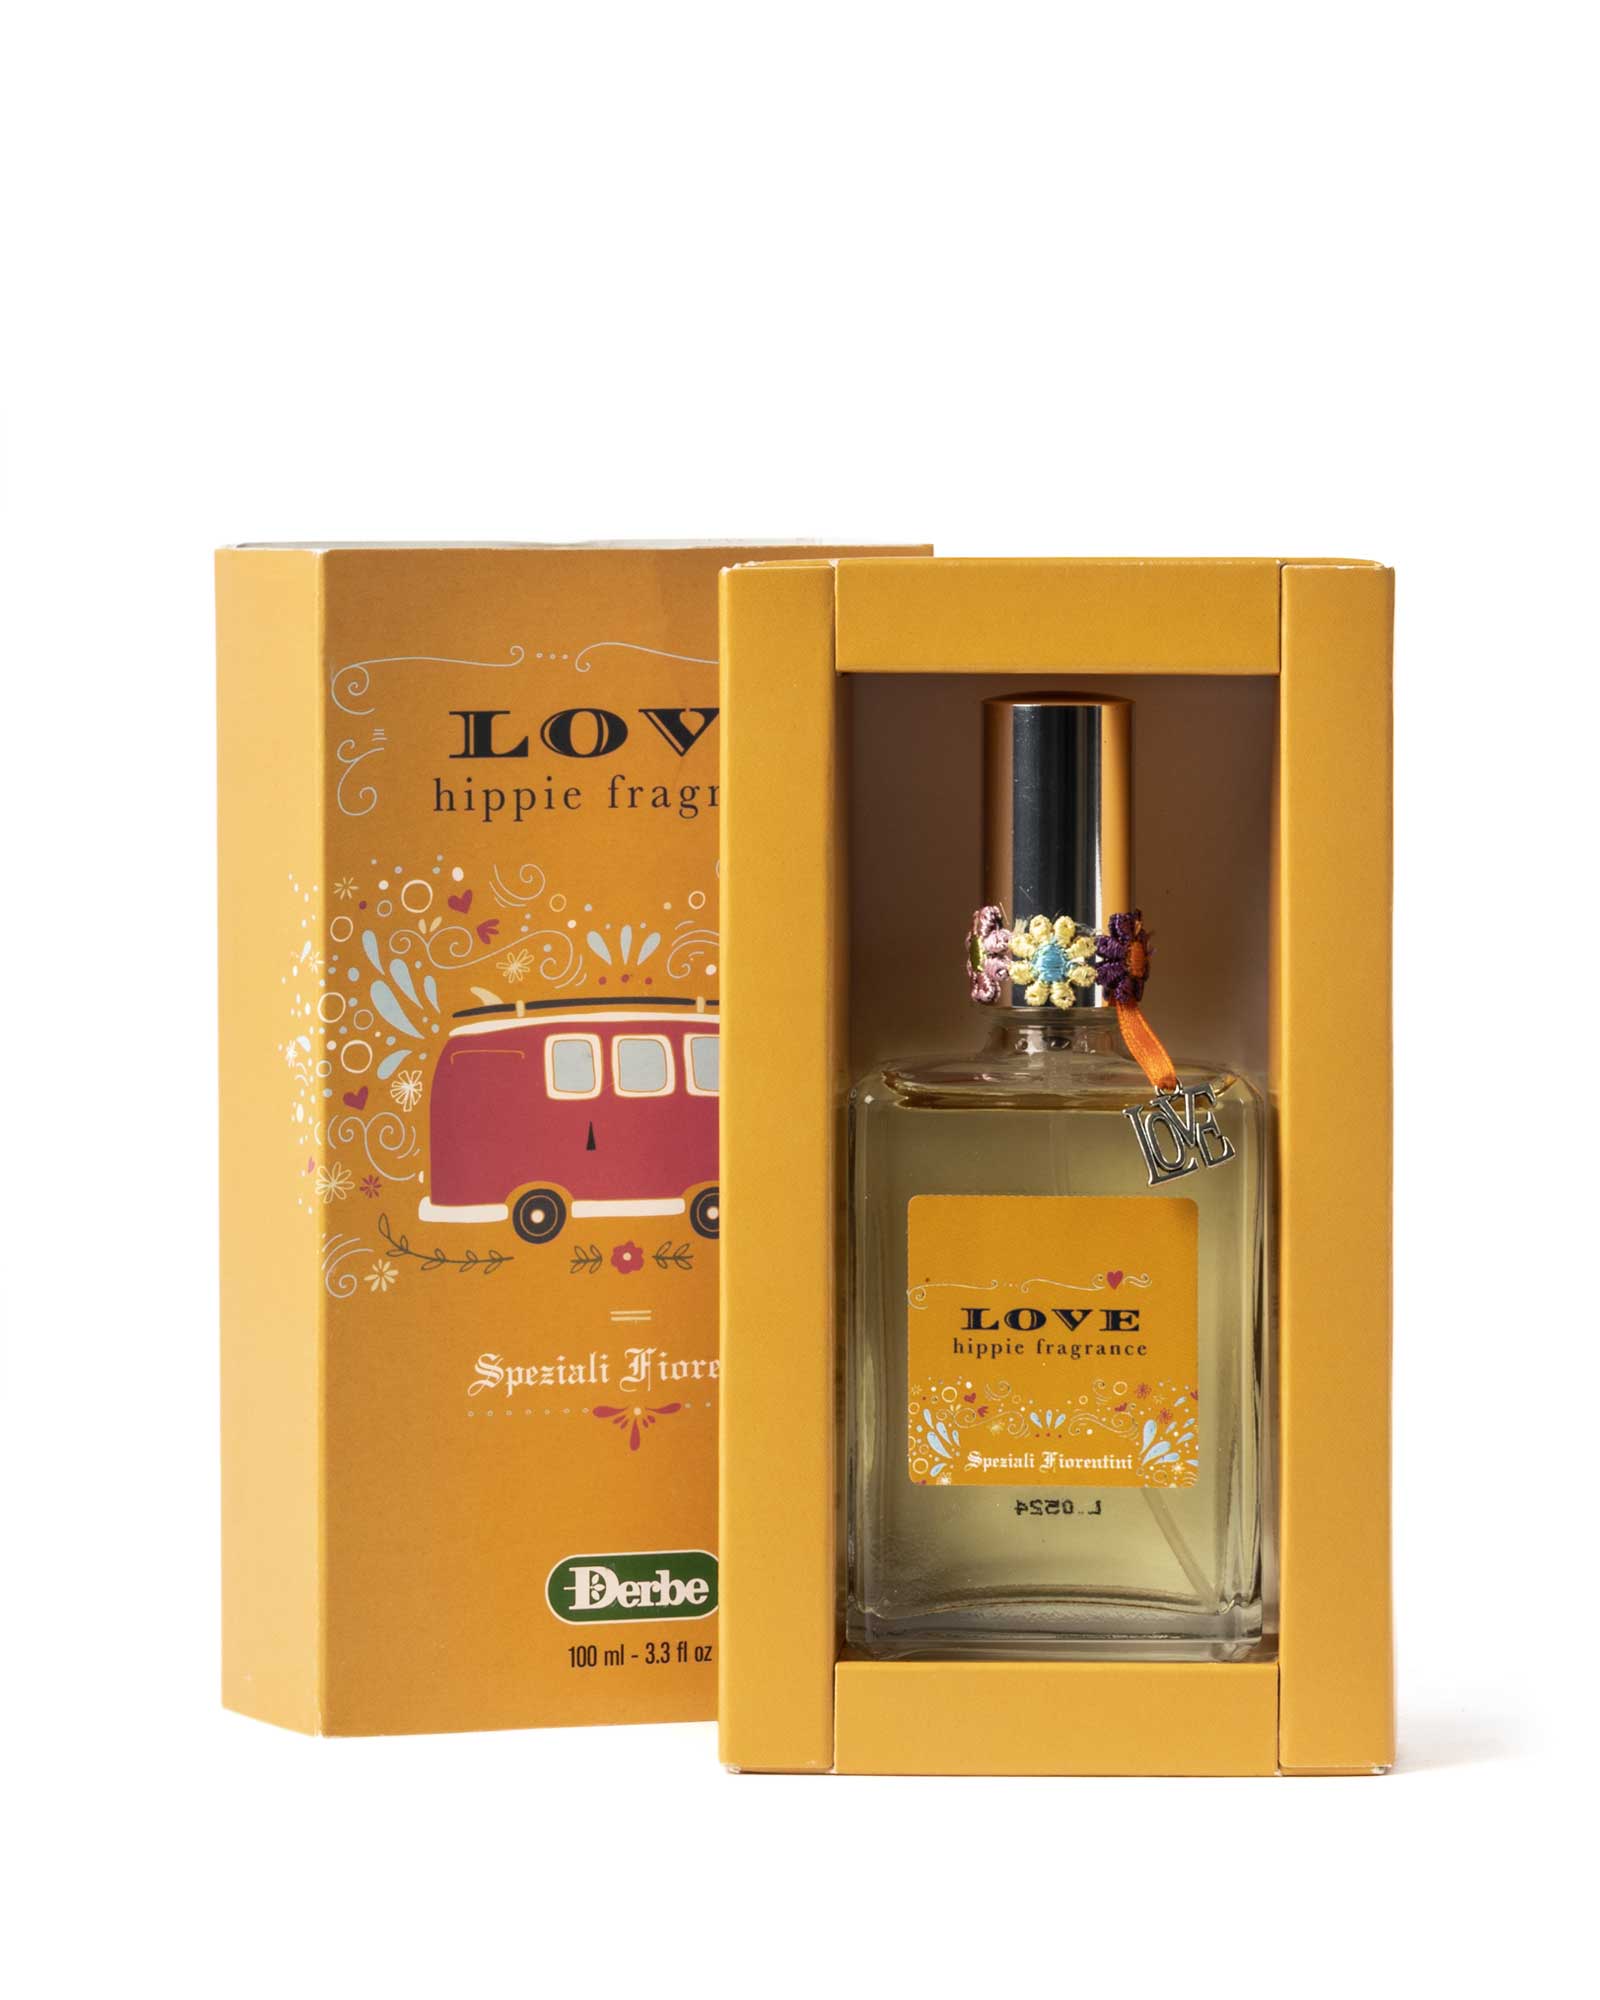 parfüm-liebe-hippie-duft-speziali-fiorentini-box-produkt-derbe